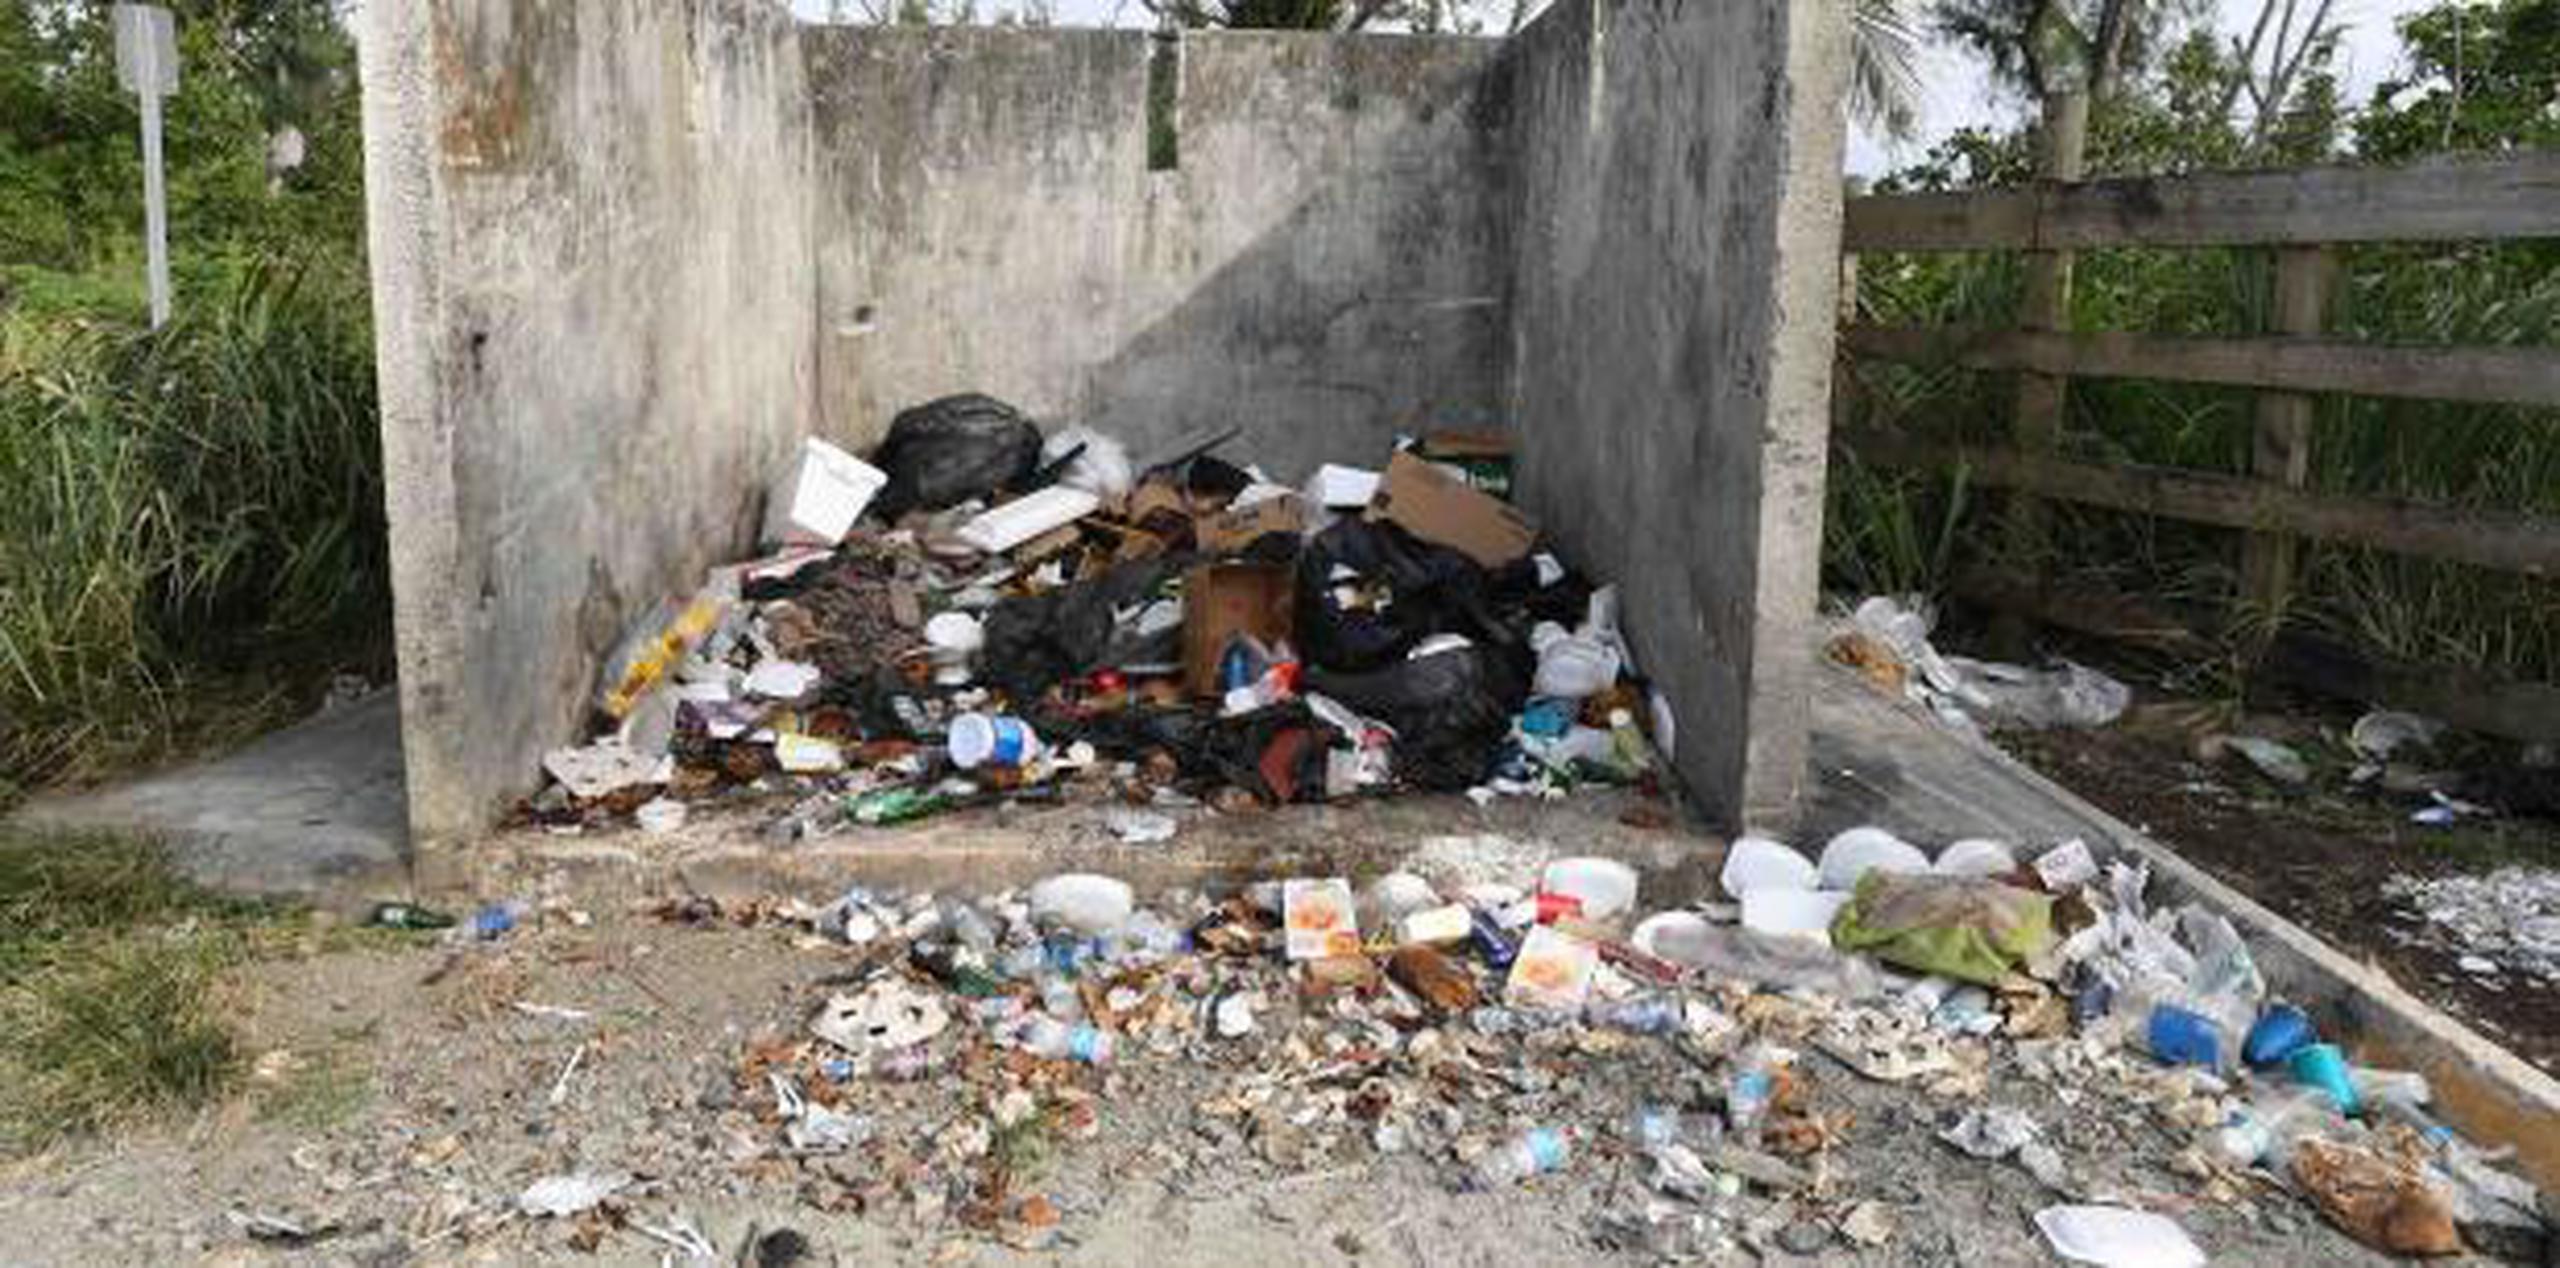 Abandonado el paseo tablado de Piñones desde el paso del huracán María. Hay basura, quioscos abandonados y trabajos sin terminar. (LUIS.ALCALADELOLMO@GFRMEDIA.COM)